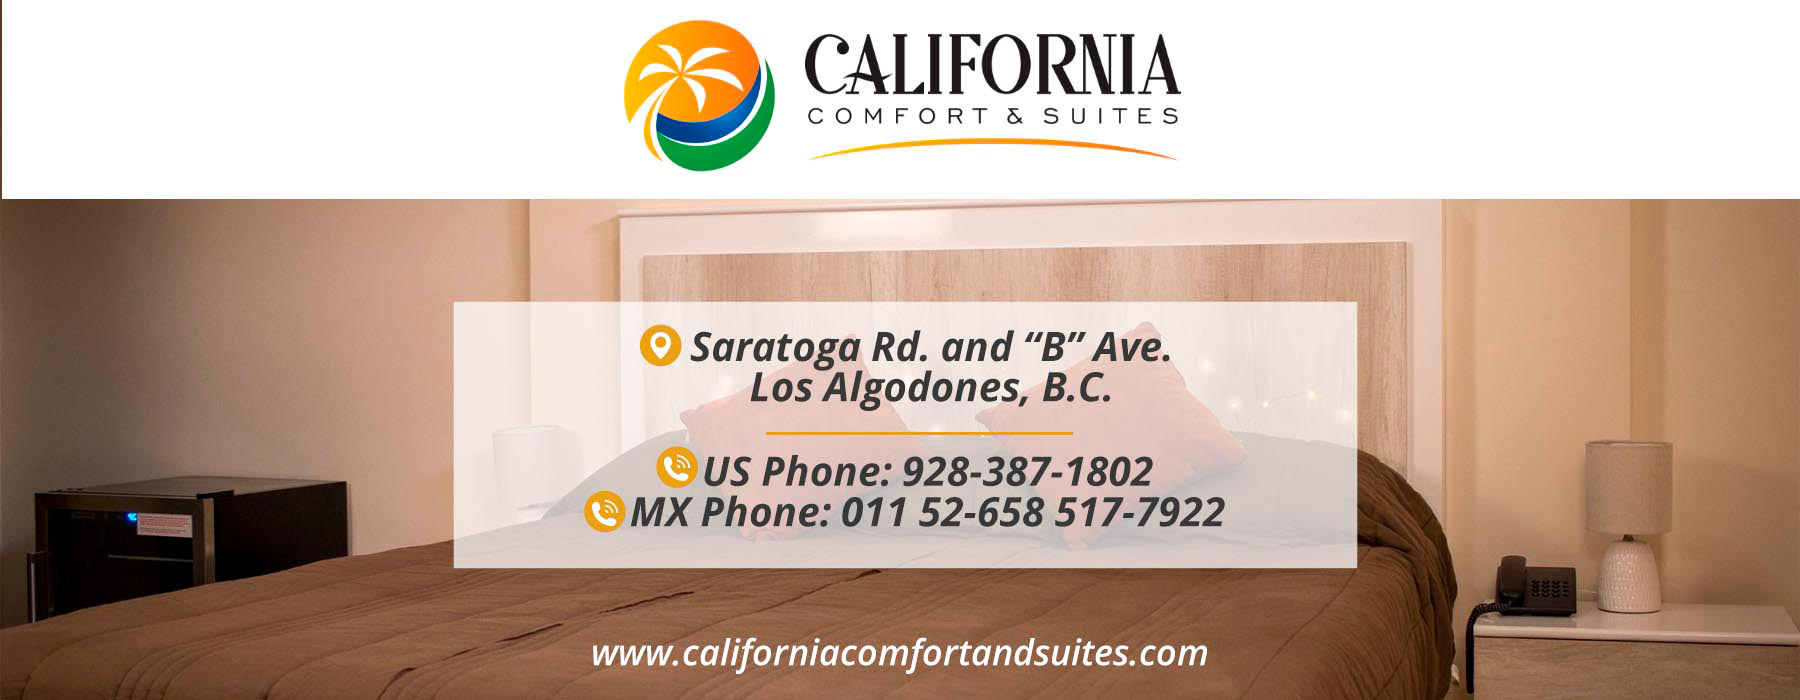  Hotel California Comfort & Suites